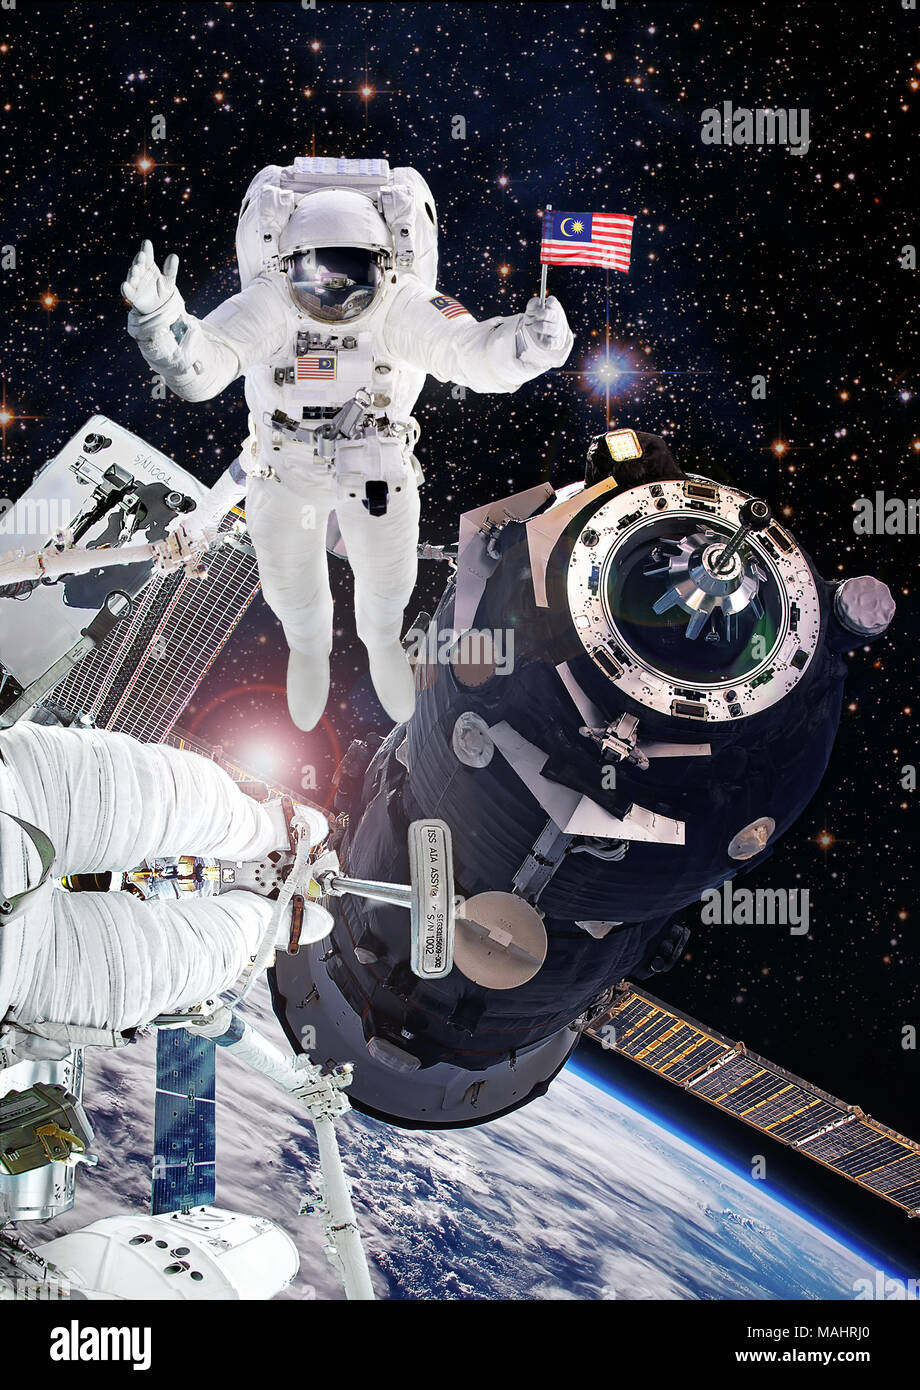 El astronauta en el espacio ultraterrestre, artista expresión de cosmonauta de la Agencia Espacial Nacional de Malasia en la Estación Espacial Internacional. Los elementos de esta imagen amueblar Foto de stock